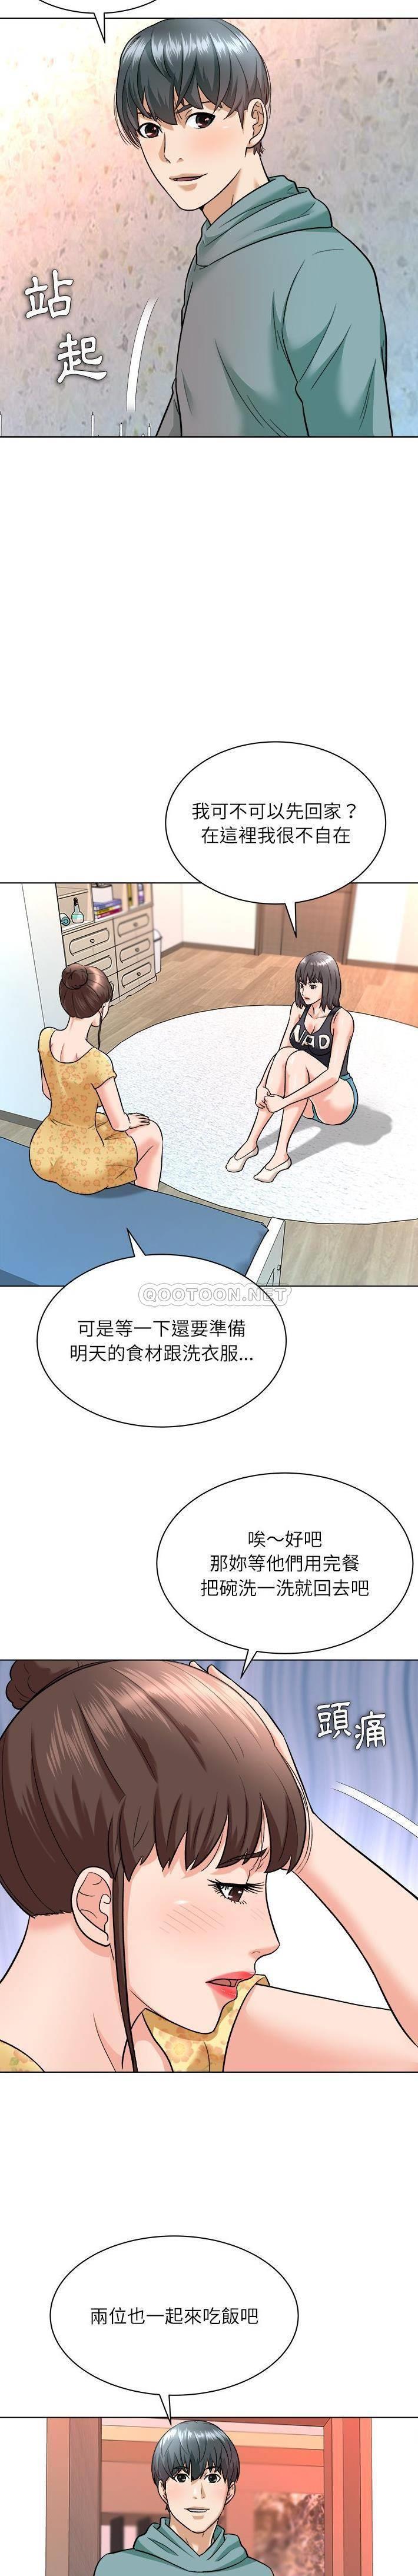 韩国污漫画 豪賭陷阱 第7话 7